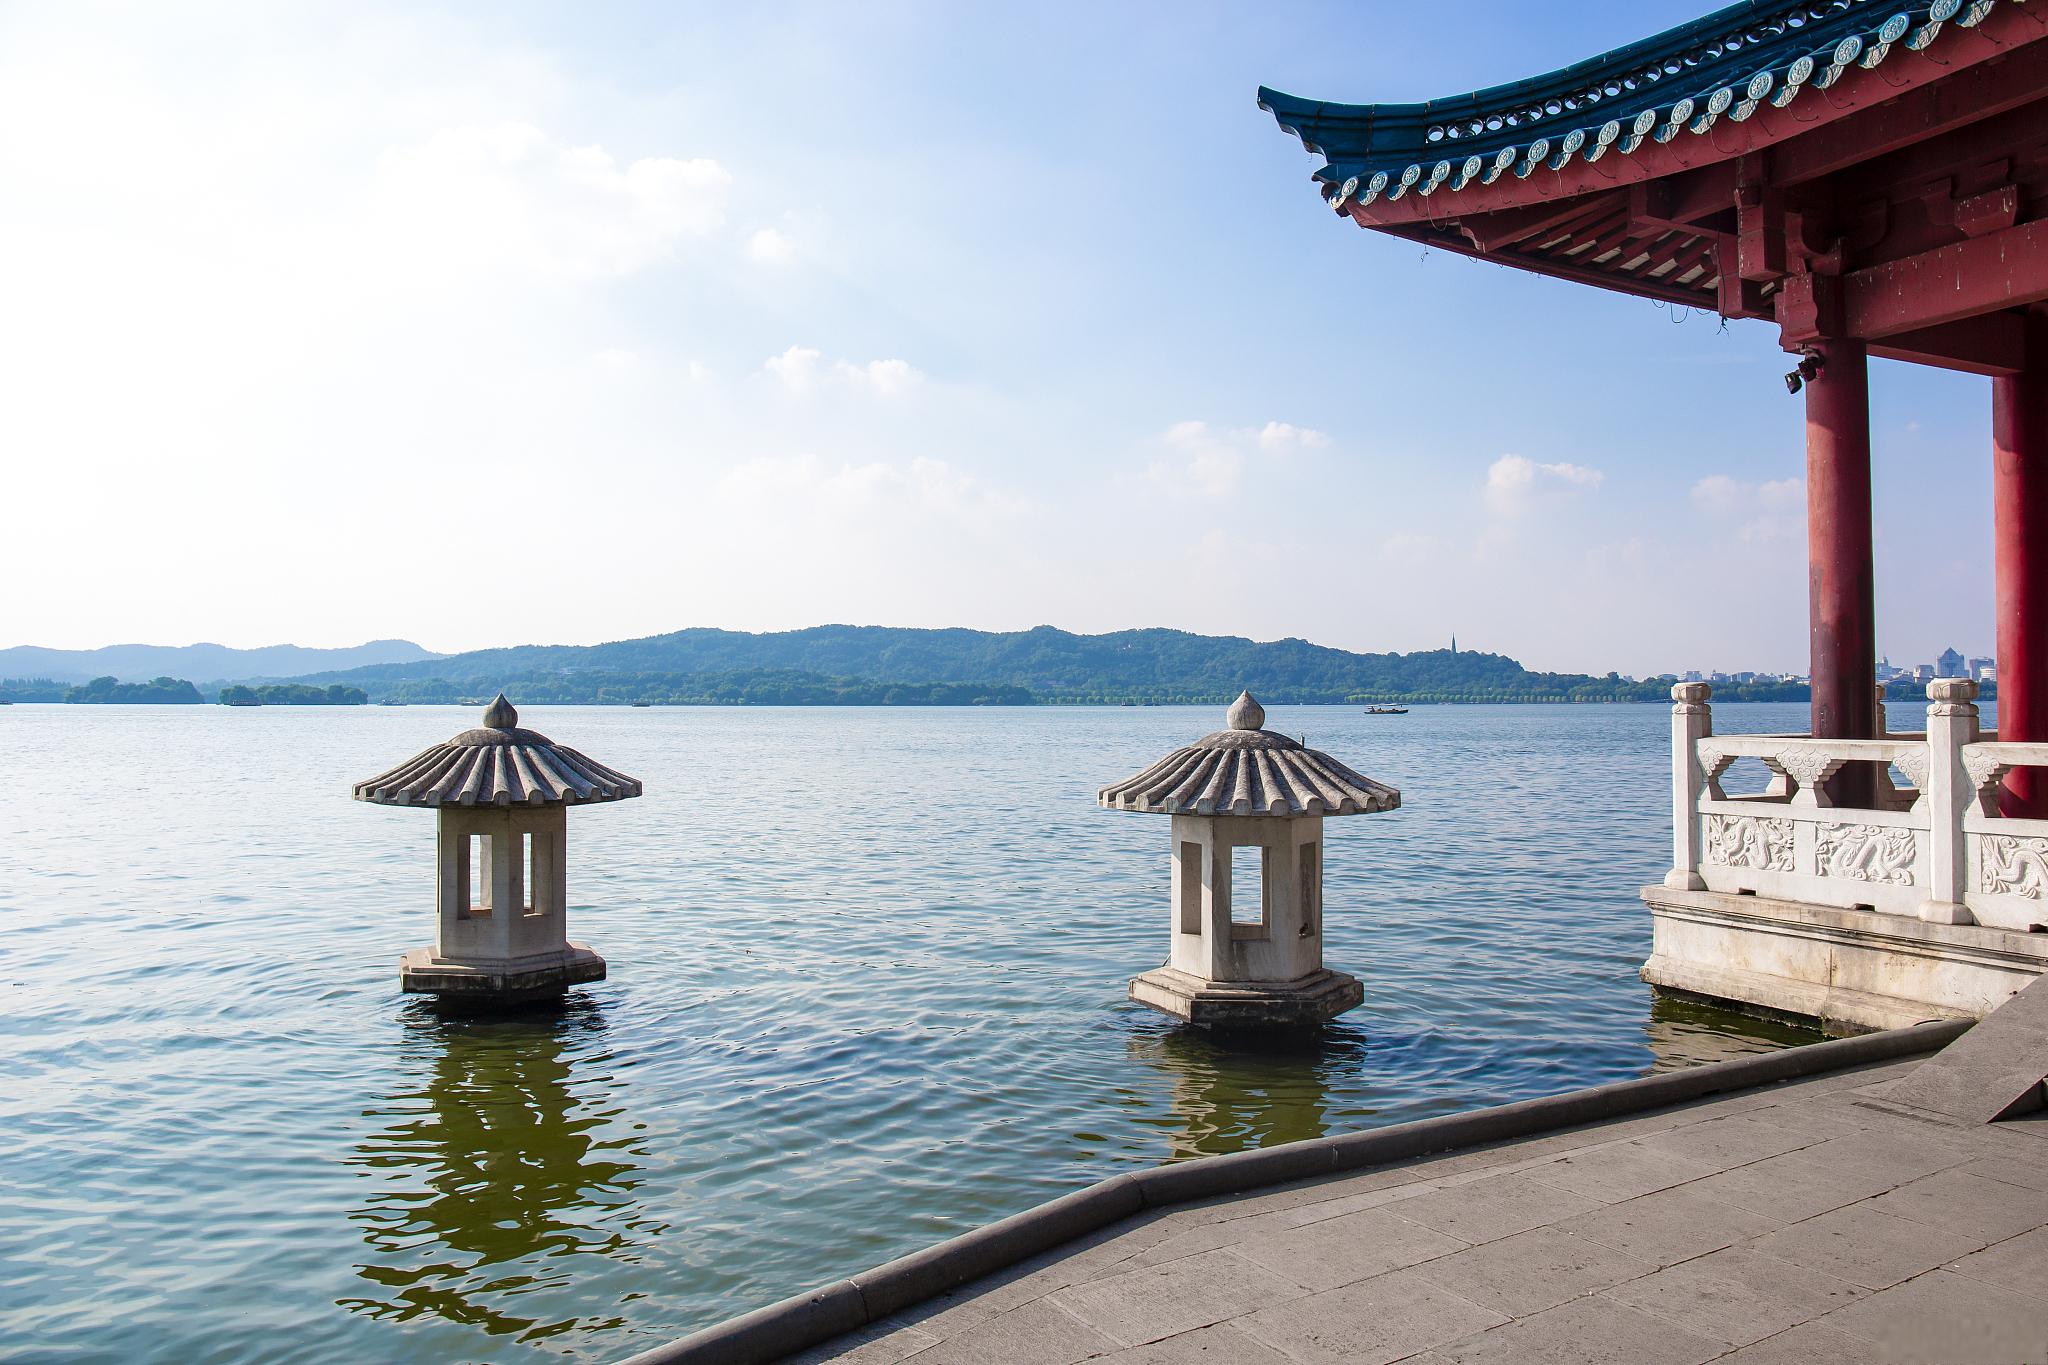 杭州西湖游玩攻略 杭州西湖是中国最具特色和代表性的旅游景区之一